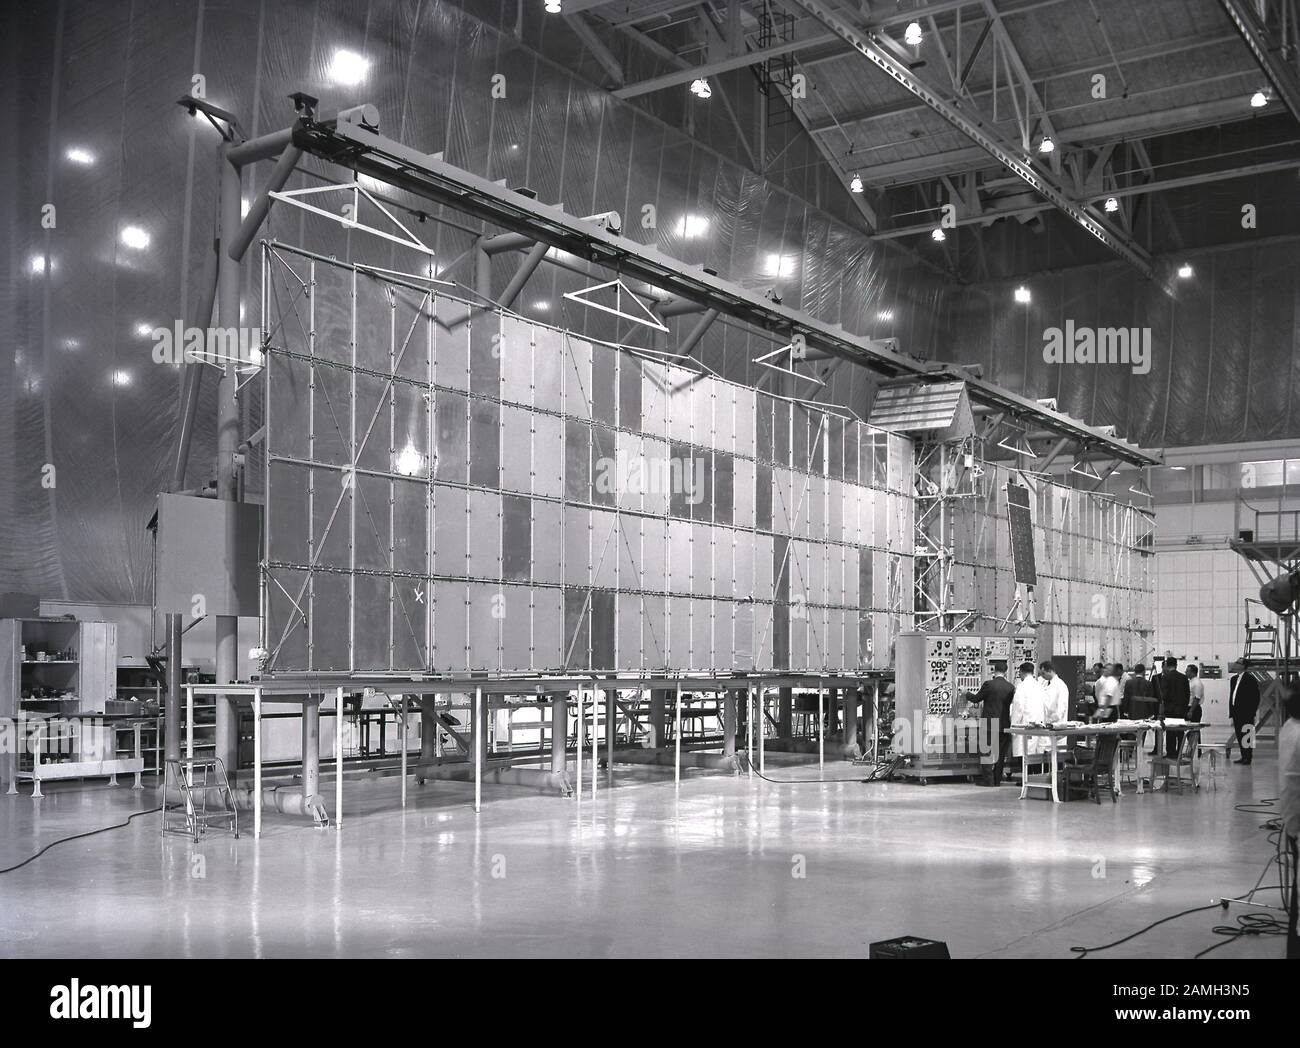 I tecnici ispezionano l'apertura alare di 96 piedi del satellite Pegasus prima del lancio alla struttura di Fairchild-Hiller a Hagerstown, Maryland, Stati Uniti, 16 febbraio 1965. Immagine gentilmente concessa dalla NASA. () Foto Stock